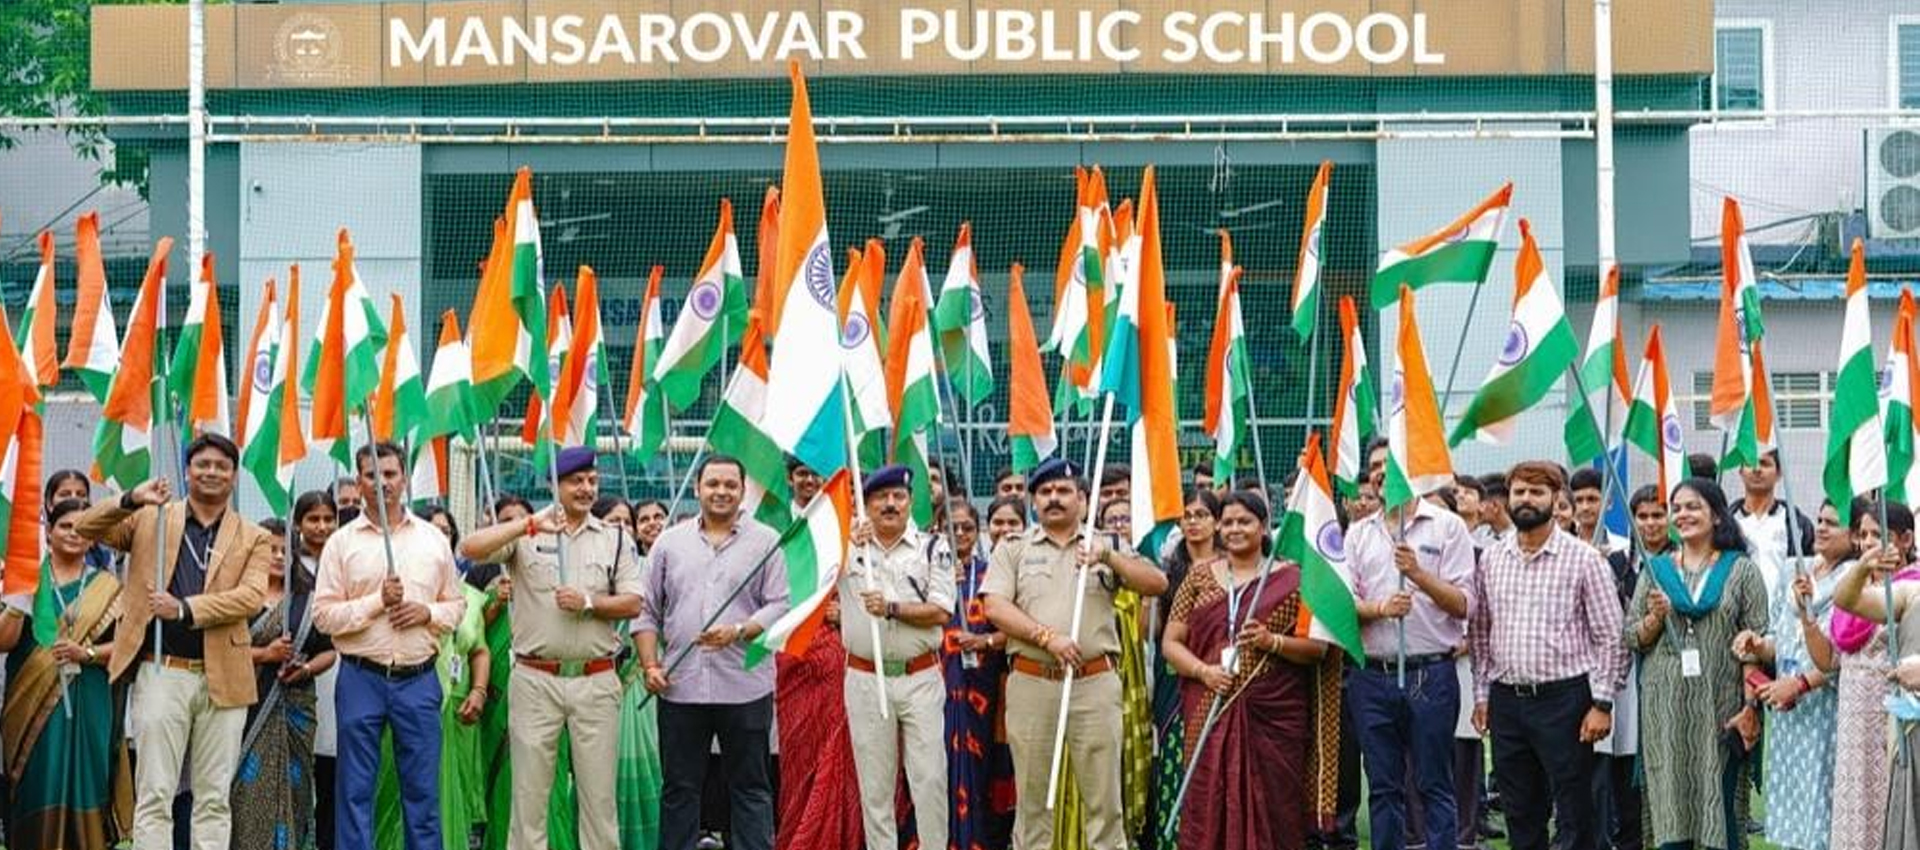 Mansarovar Public School Bhopal